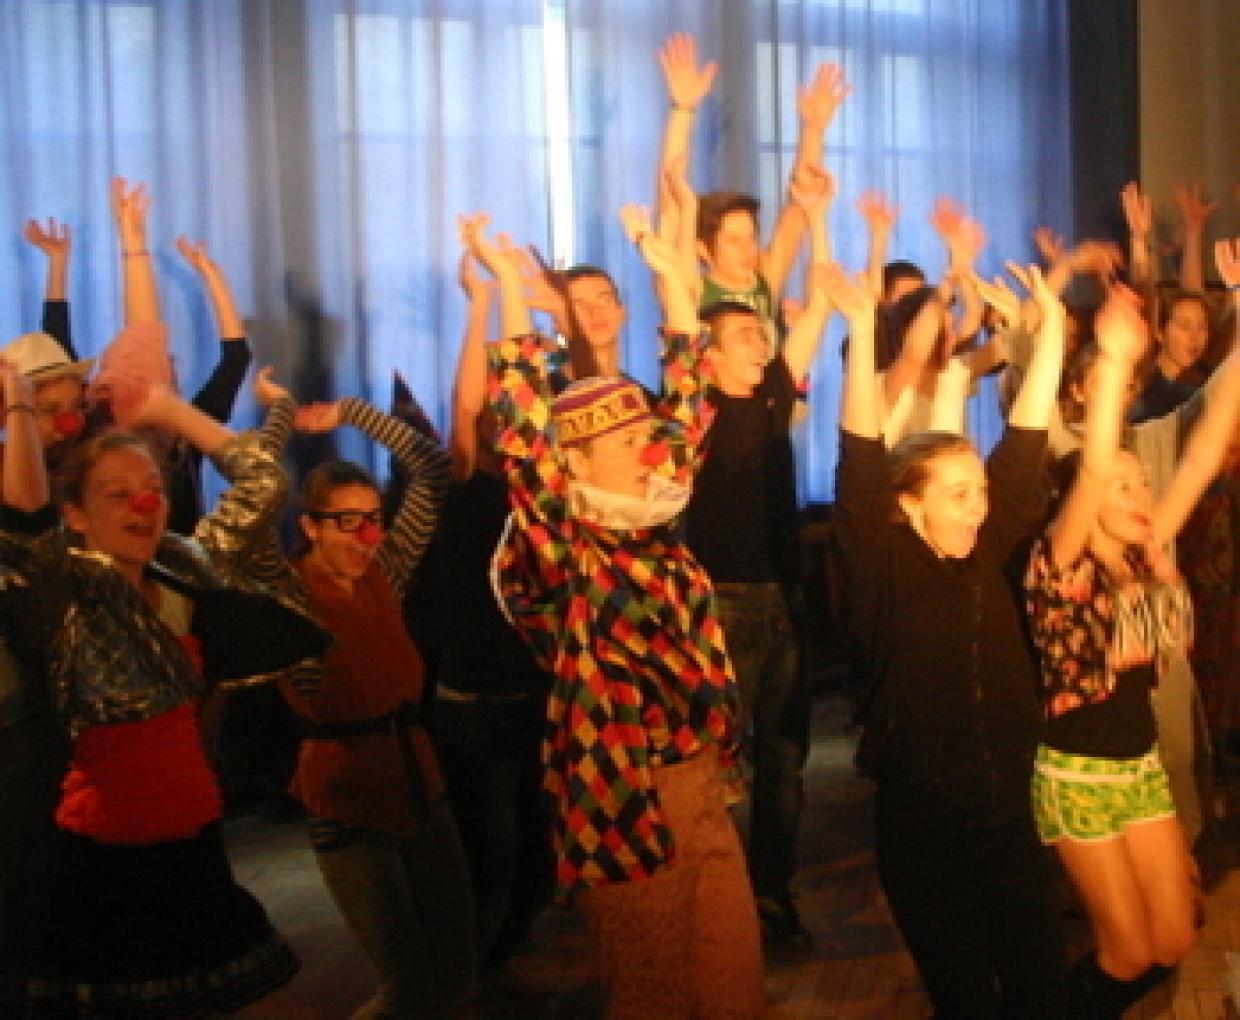 Zusammen in der Manege: Beste Stimmung beim deutsch-polnischen Zirkusworkshop